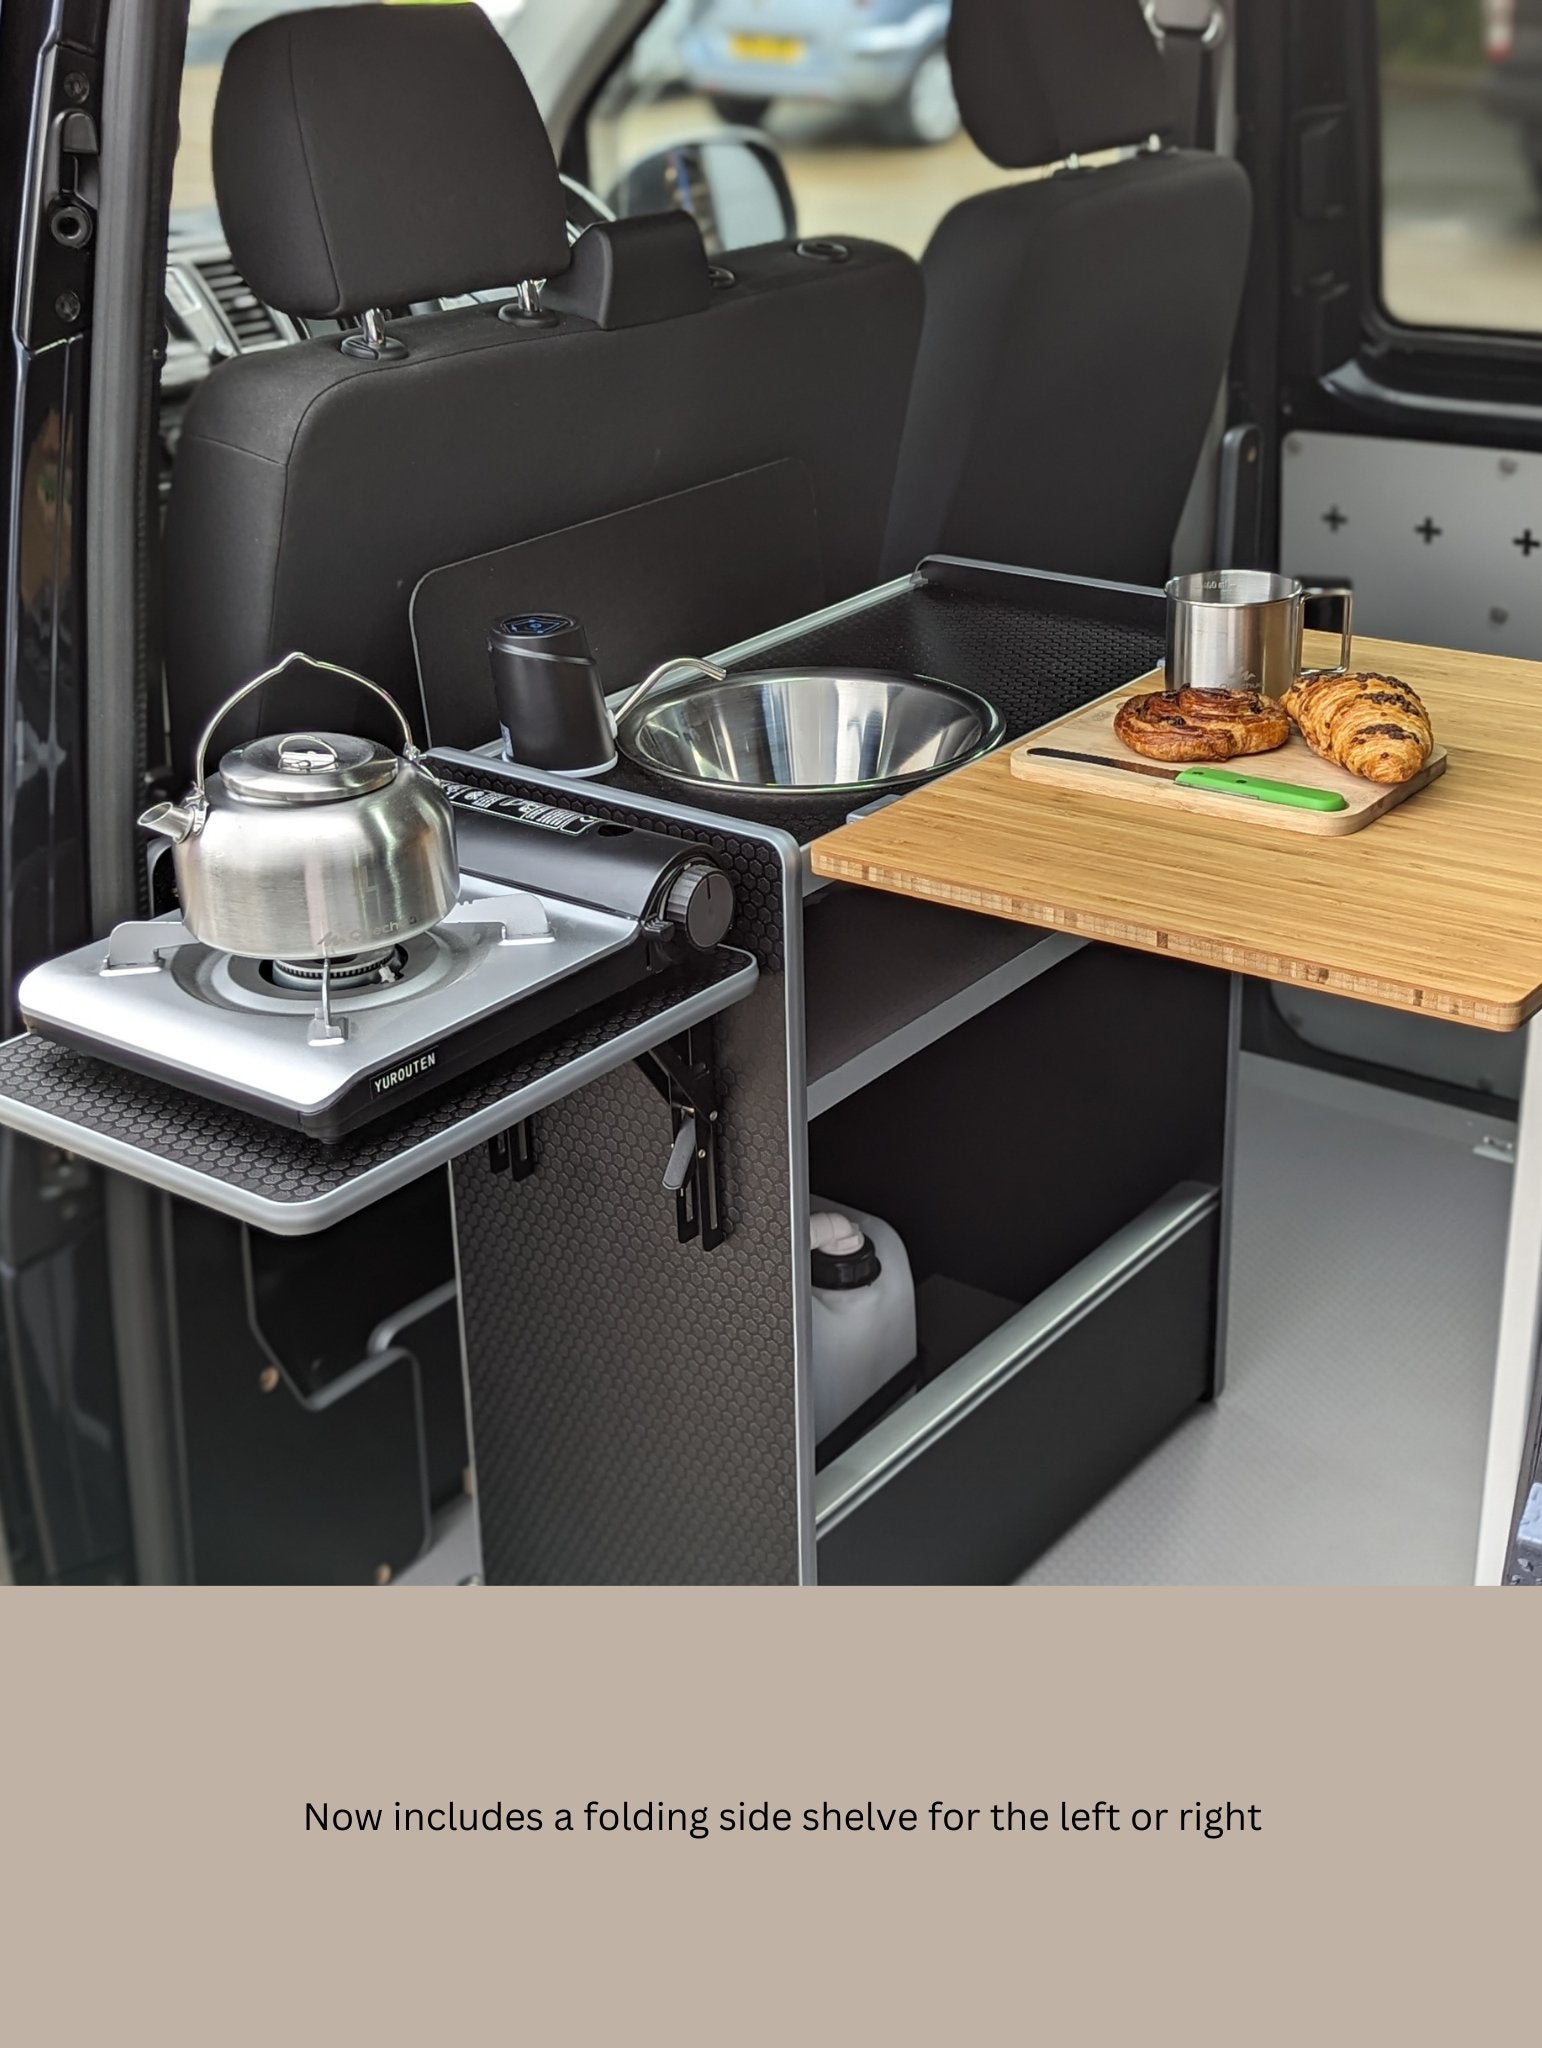 Vangear Nano-Pod campervan kitchen-Black with Black door - Vangear-EU